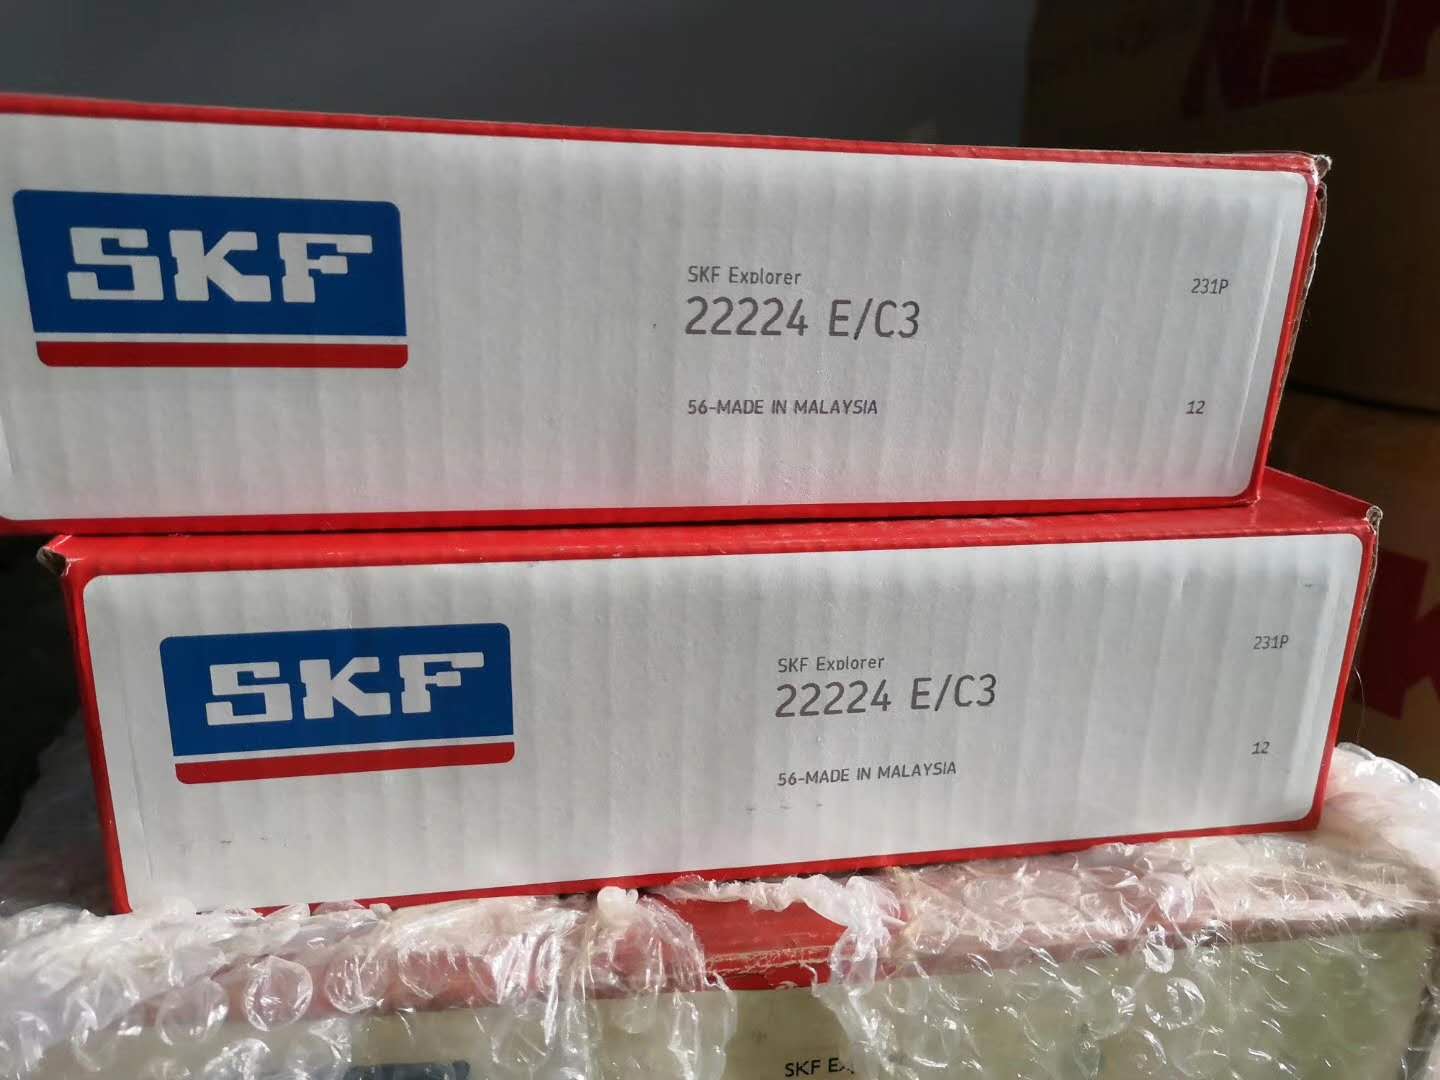 乌鲁木齐正品SKF进口轴承厂家 正品授权 原装进口